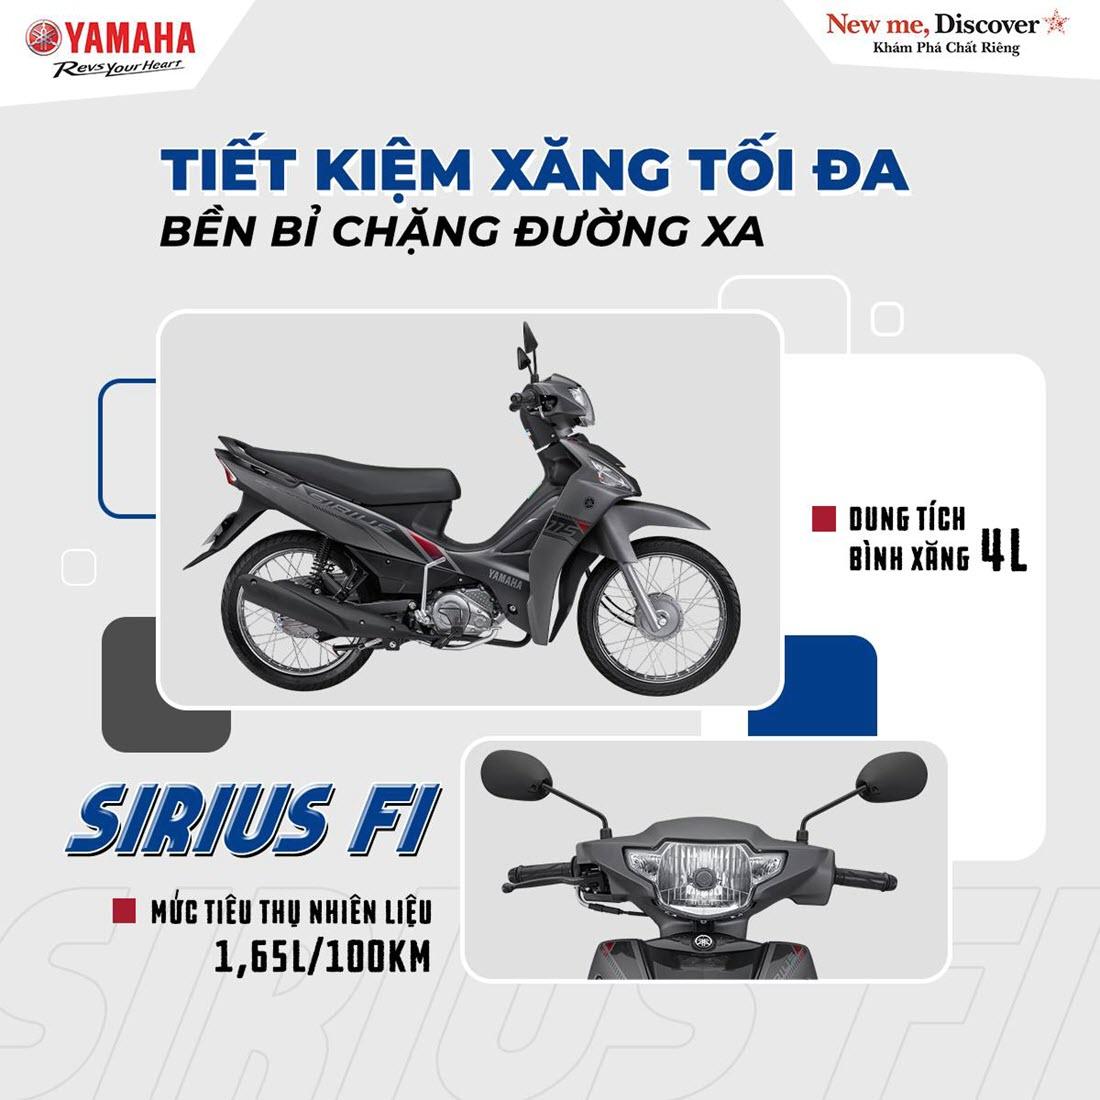 TOP các loại xe máy đẹp được ưa chuộng ở Việt Nam 